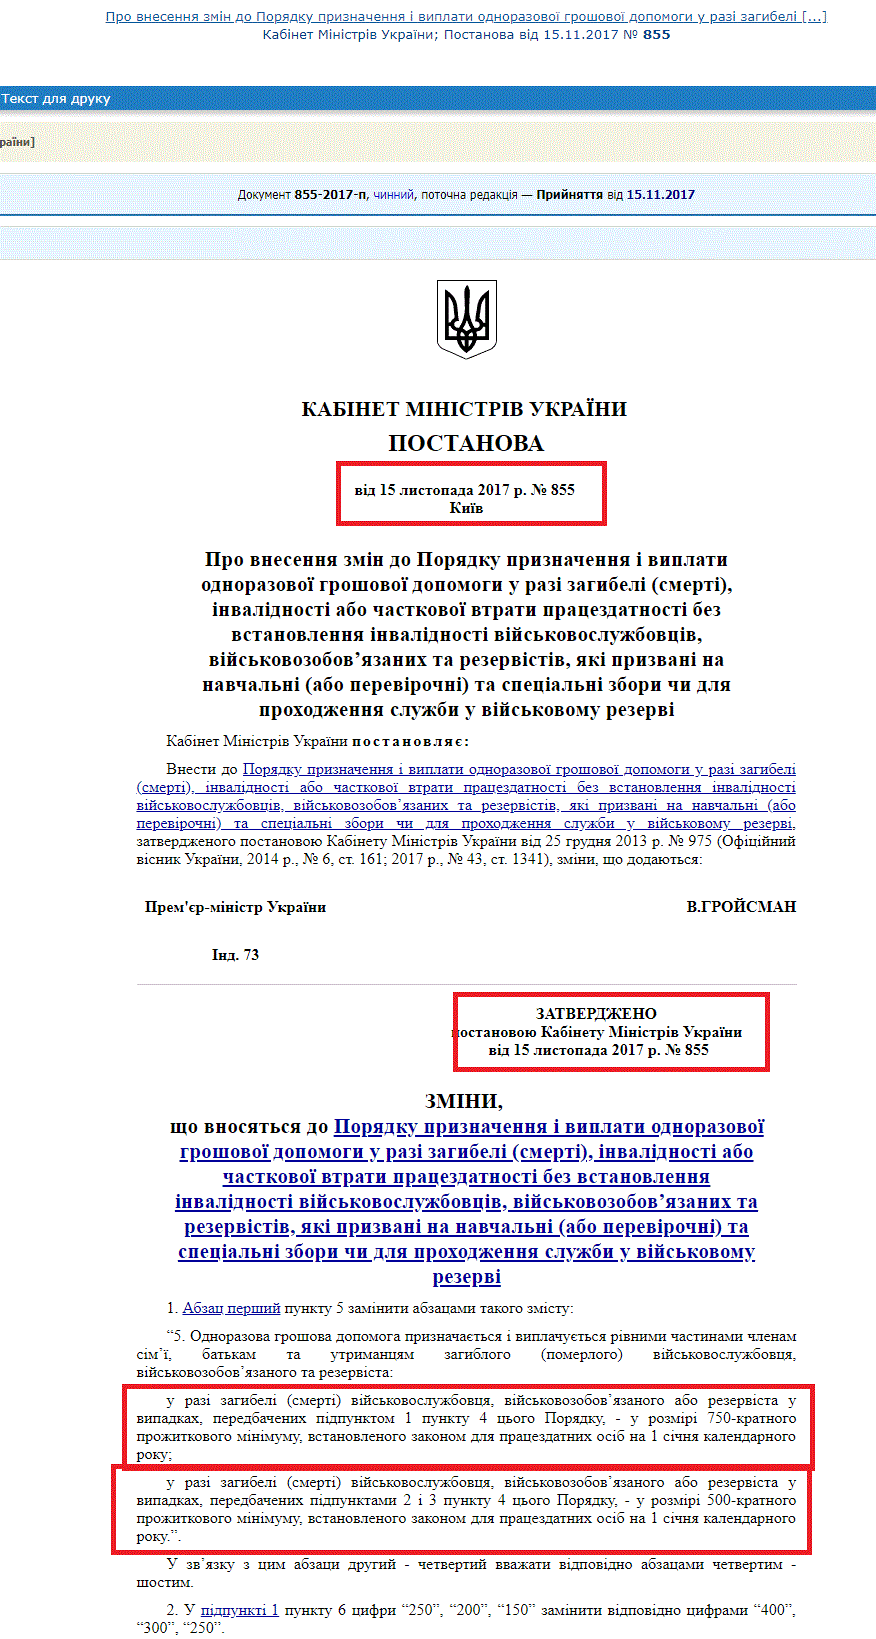 http://zakon0.rada.gov.ua/laws/show/855-2017-%D0%BF